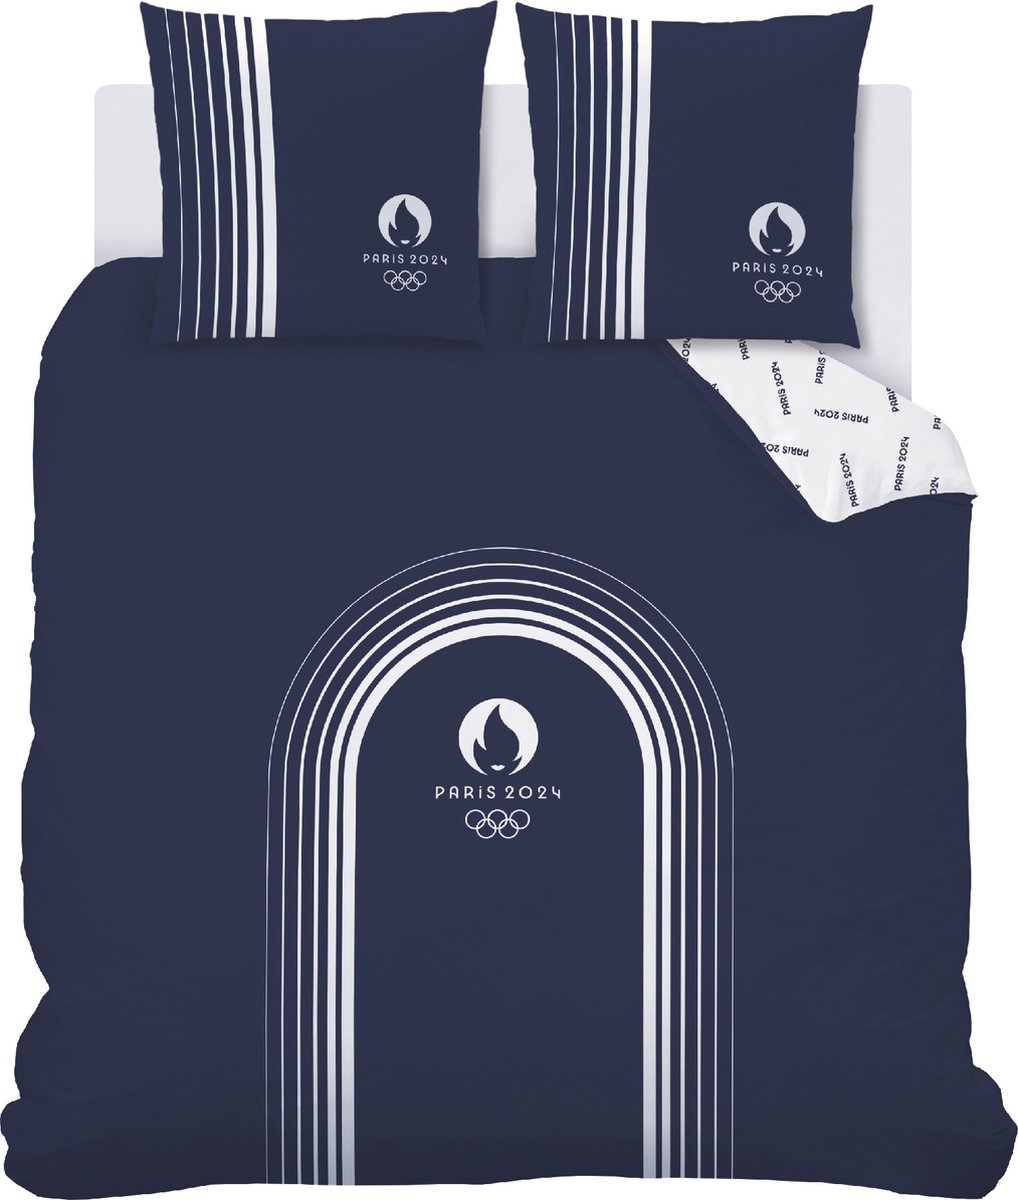 Olympische Spelen Dekbedovertrek Parijs 2024 Essentials - Lits Jumeax - 240 x 220 cm - Katoen